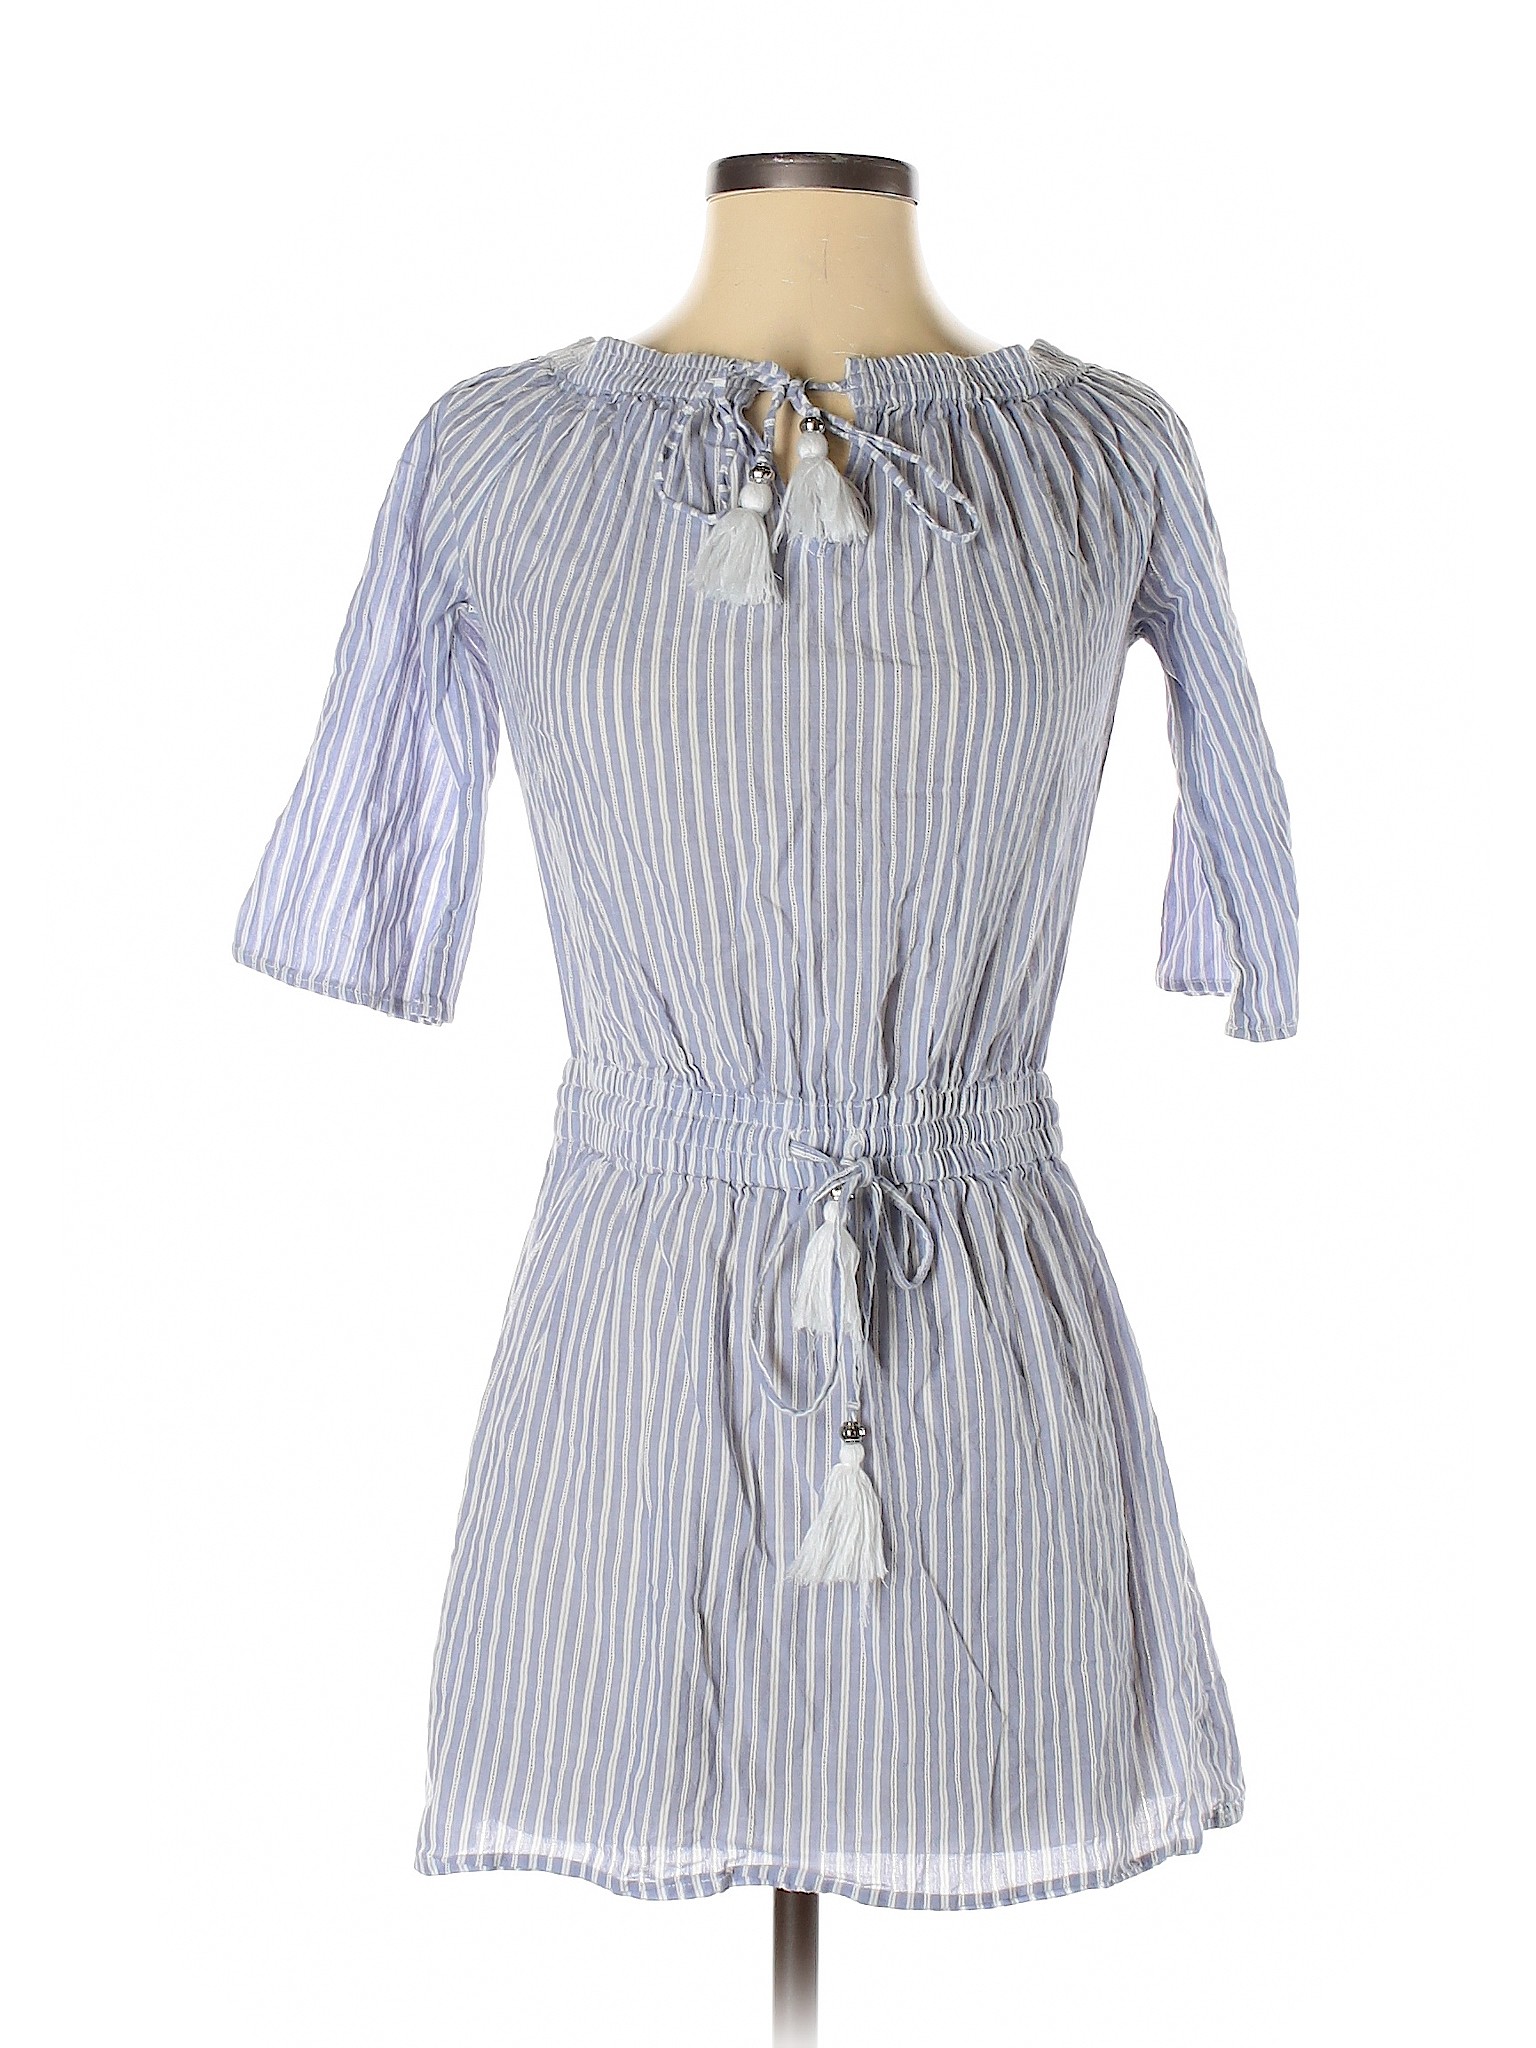 Blue Island Women Blue Casual Dress S | eBay